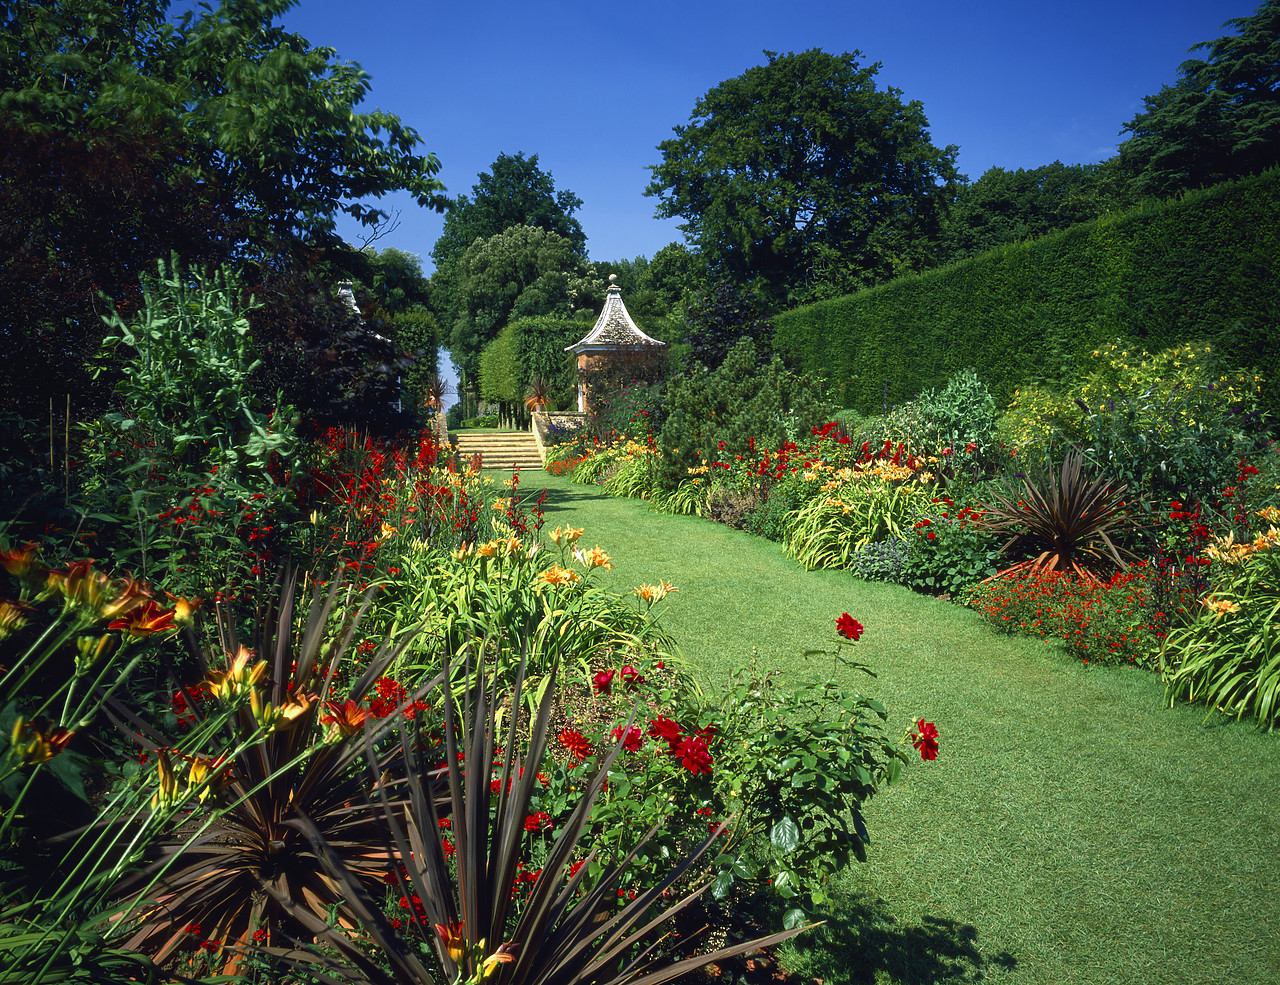 #881527-1 - Hidcote Manor Garden, near Chipping Campden, Gloucestershire, England